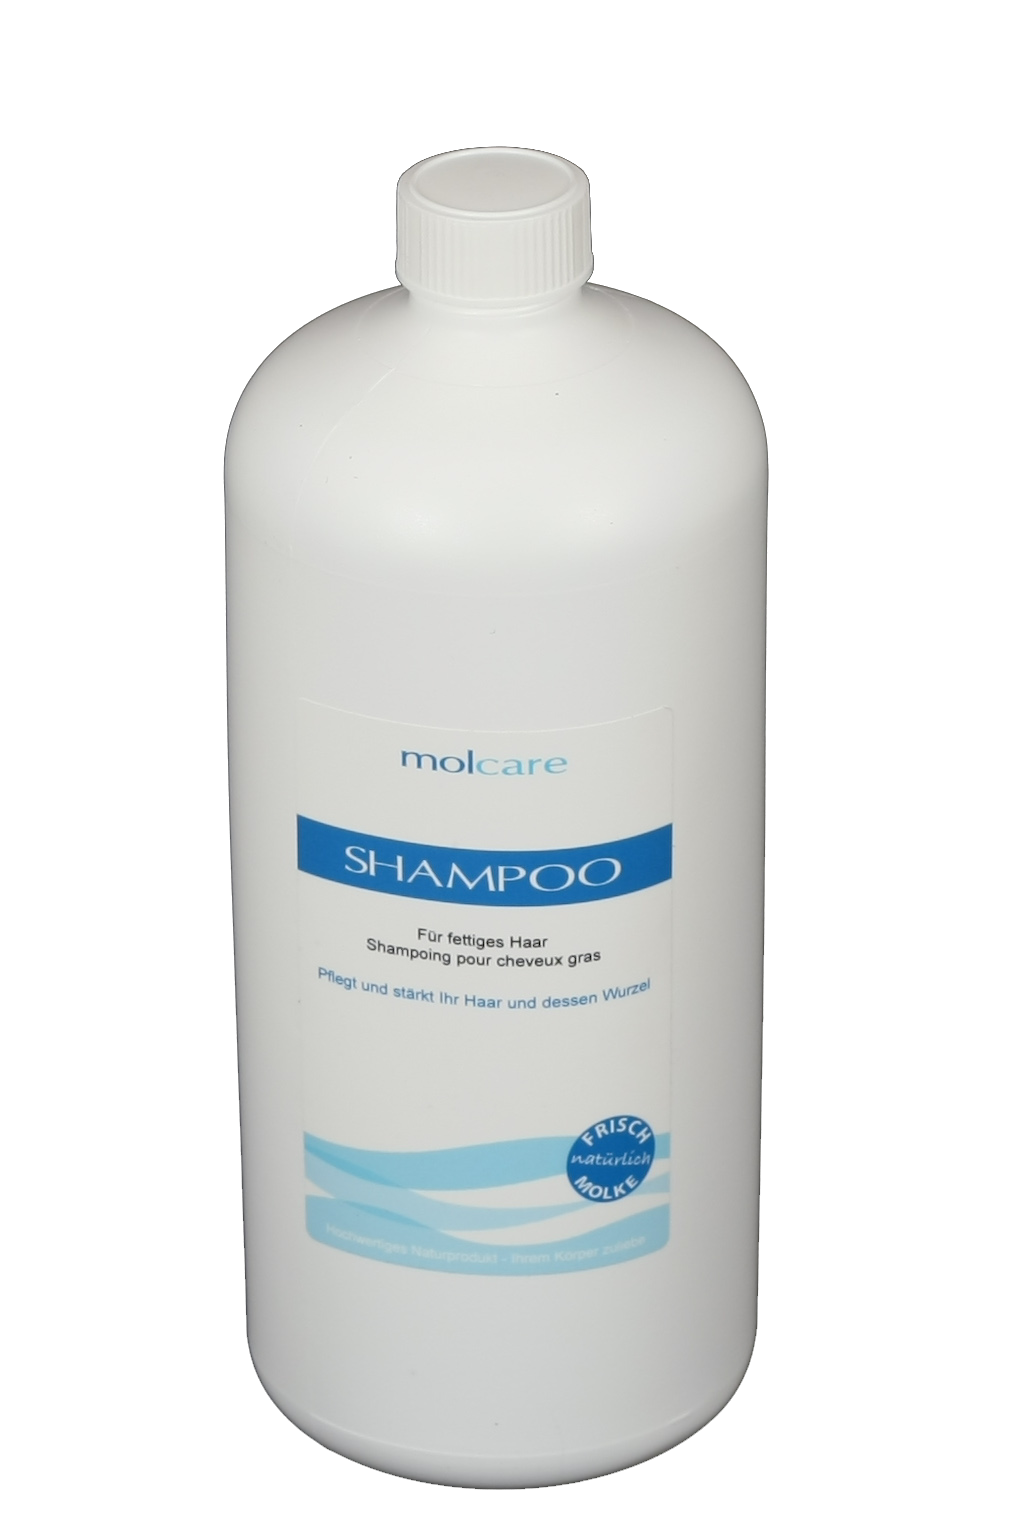 Shampoo für fettiges Haar, 1 Liter